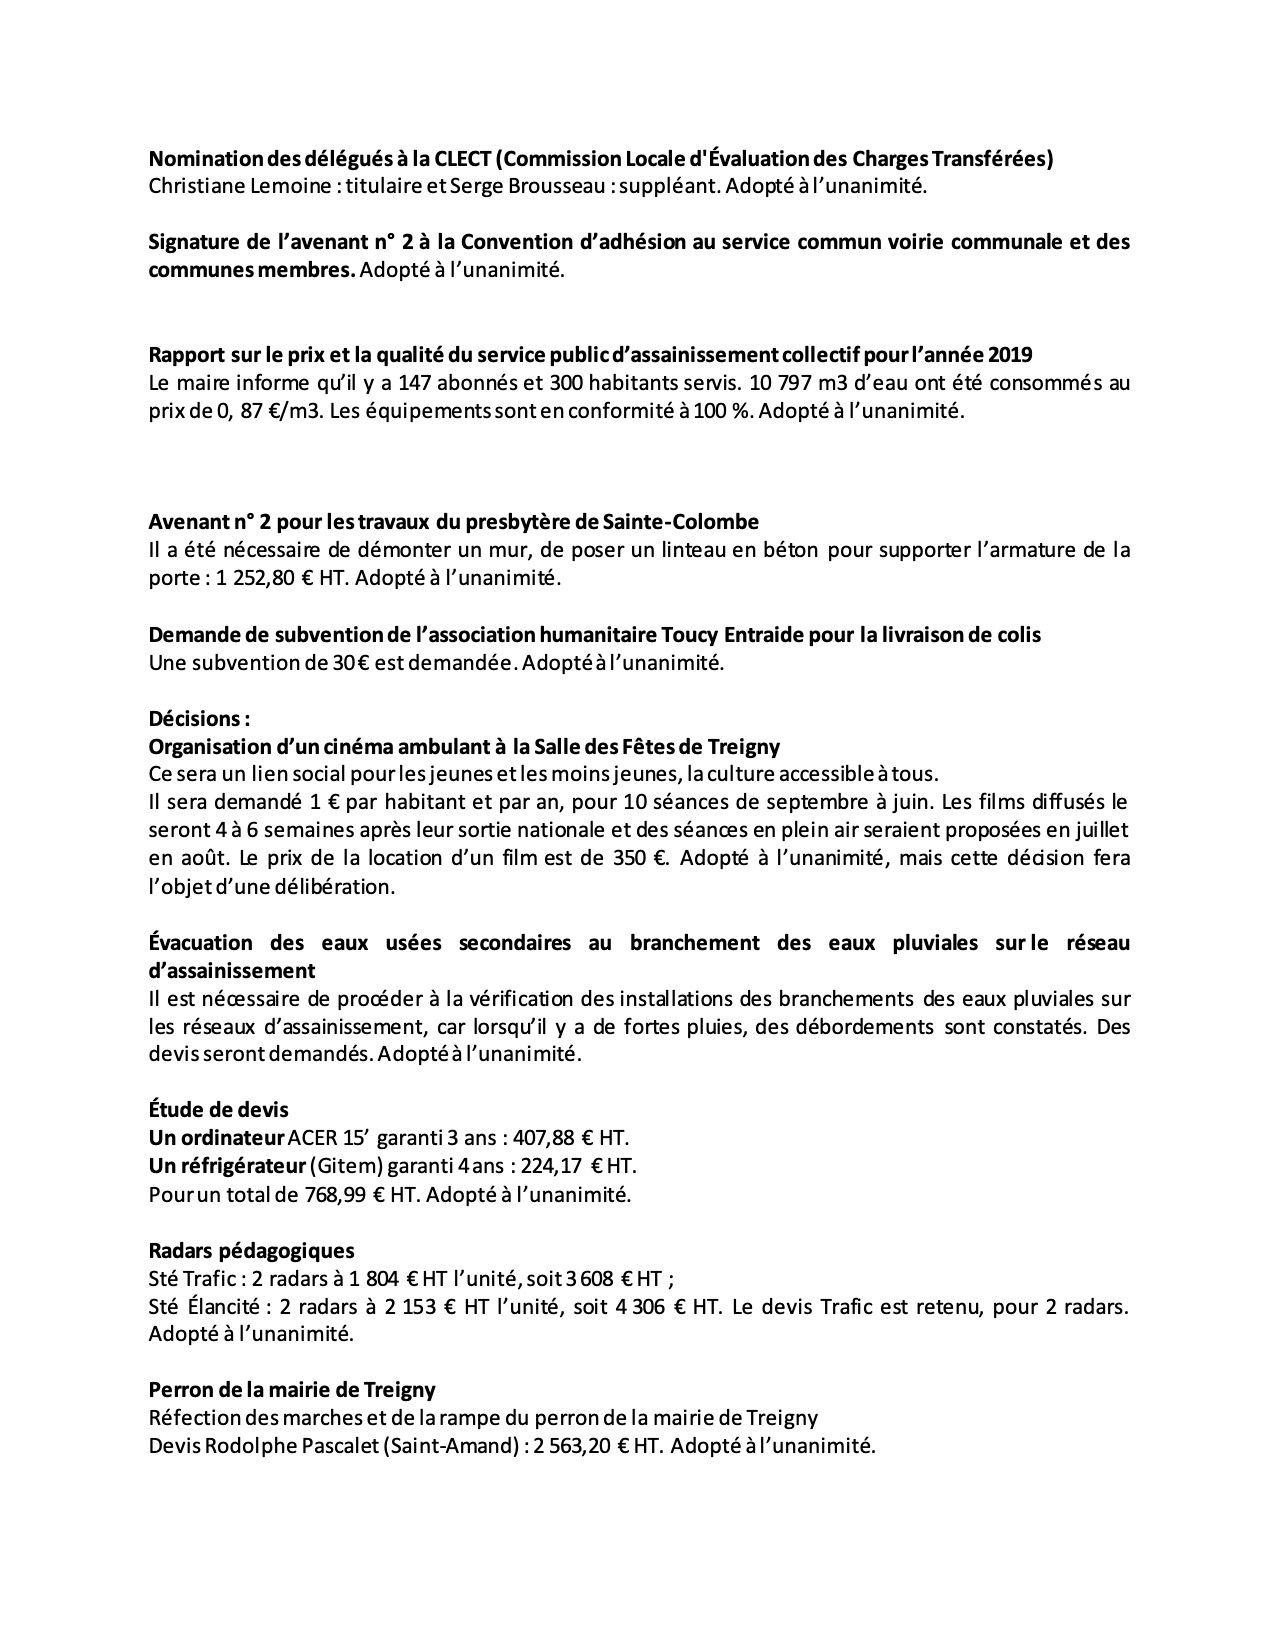 CRCM-du-13-08-2020-page2